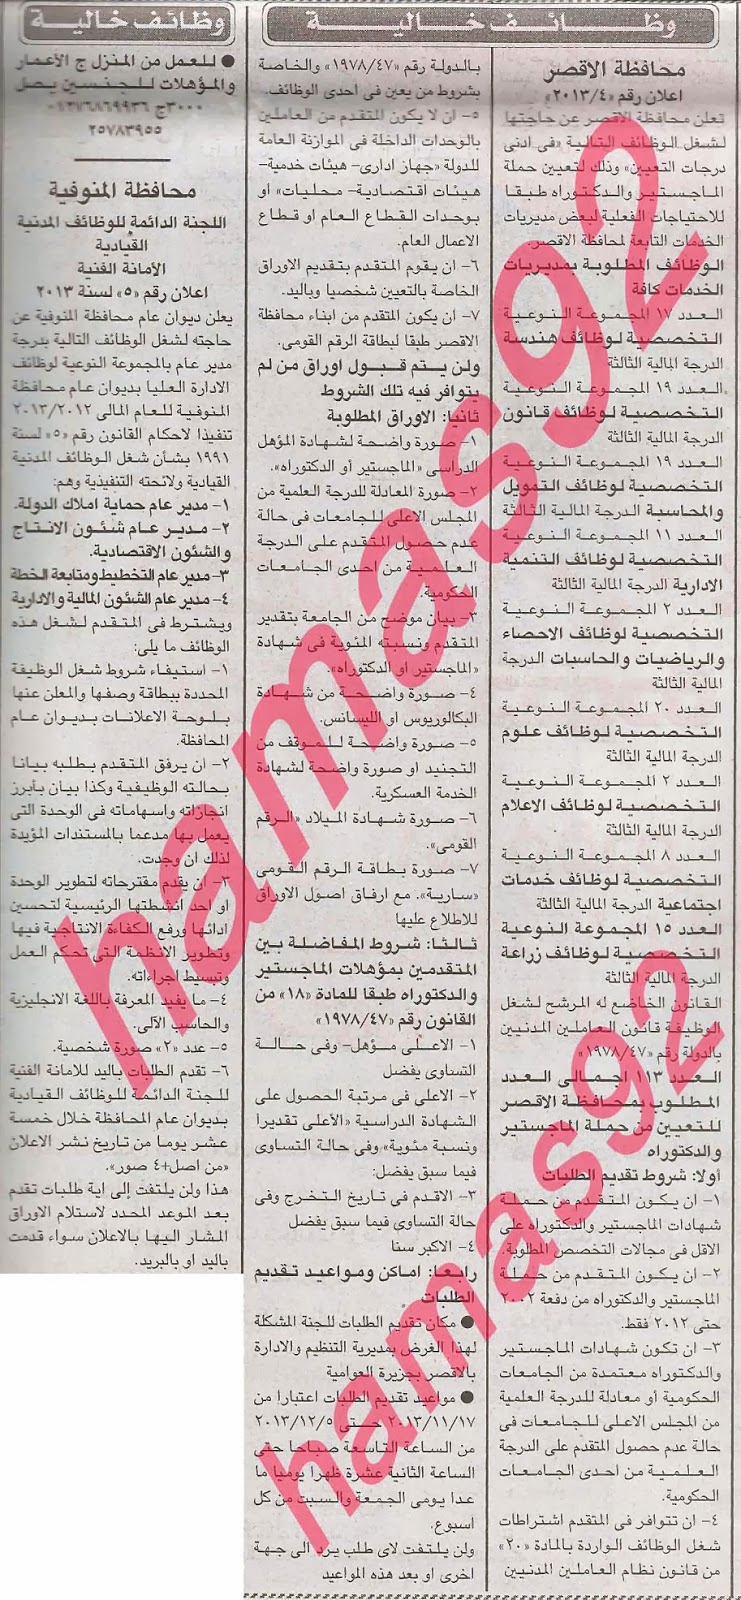 وظائف جريدة اخبار اليوم المصرية السبت 16/11/2013 ( اعلان وظائف الطب الشرعى) %D8%A7%D9%84%D8%A7%D8%AE%D8%A8%D8%A7%D8%B1+2